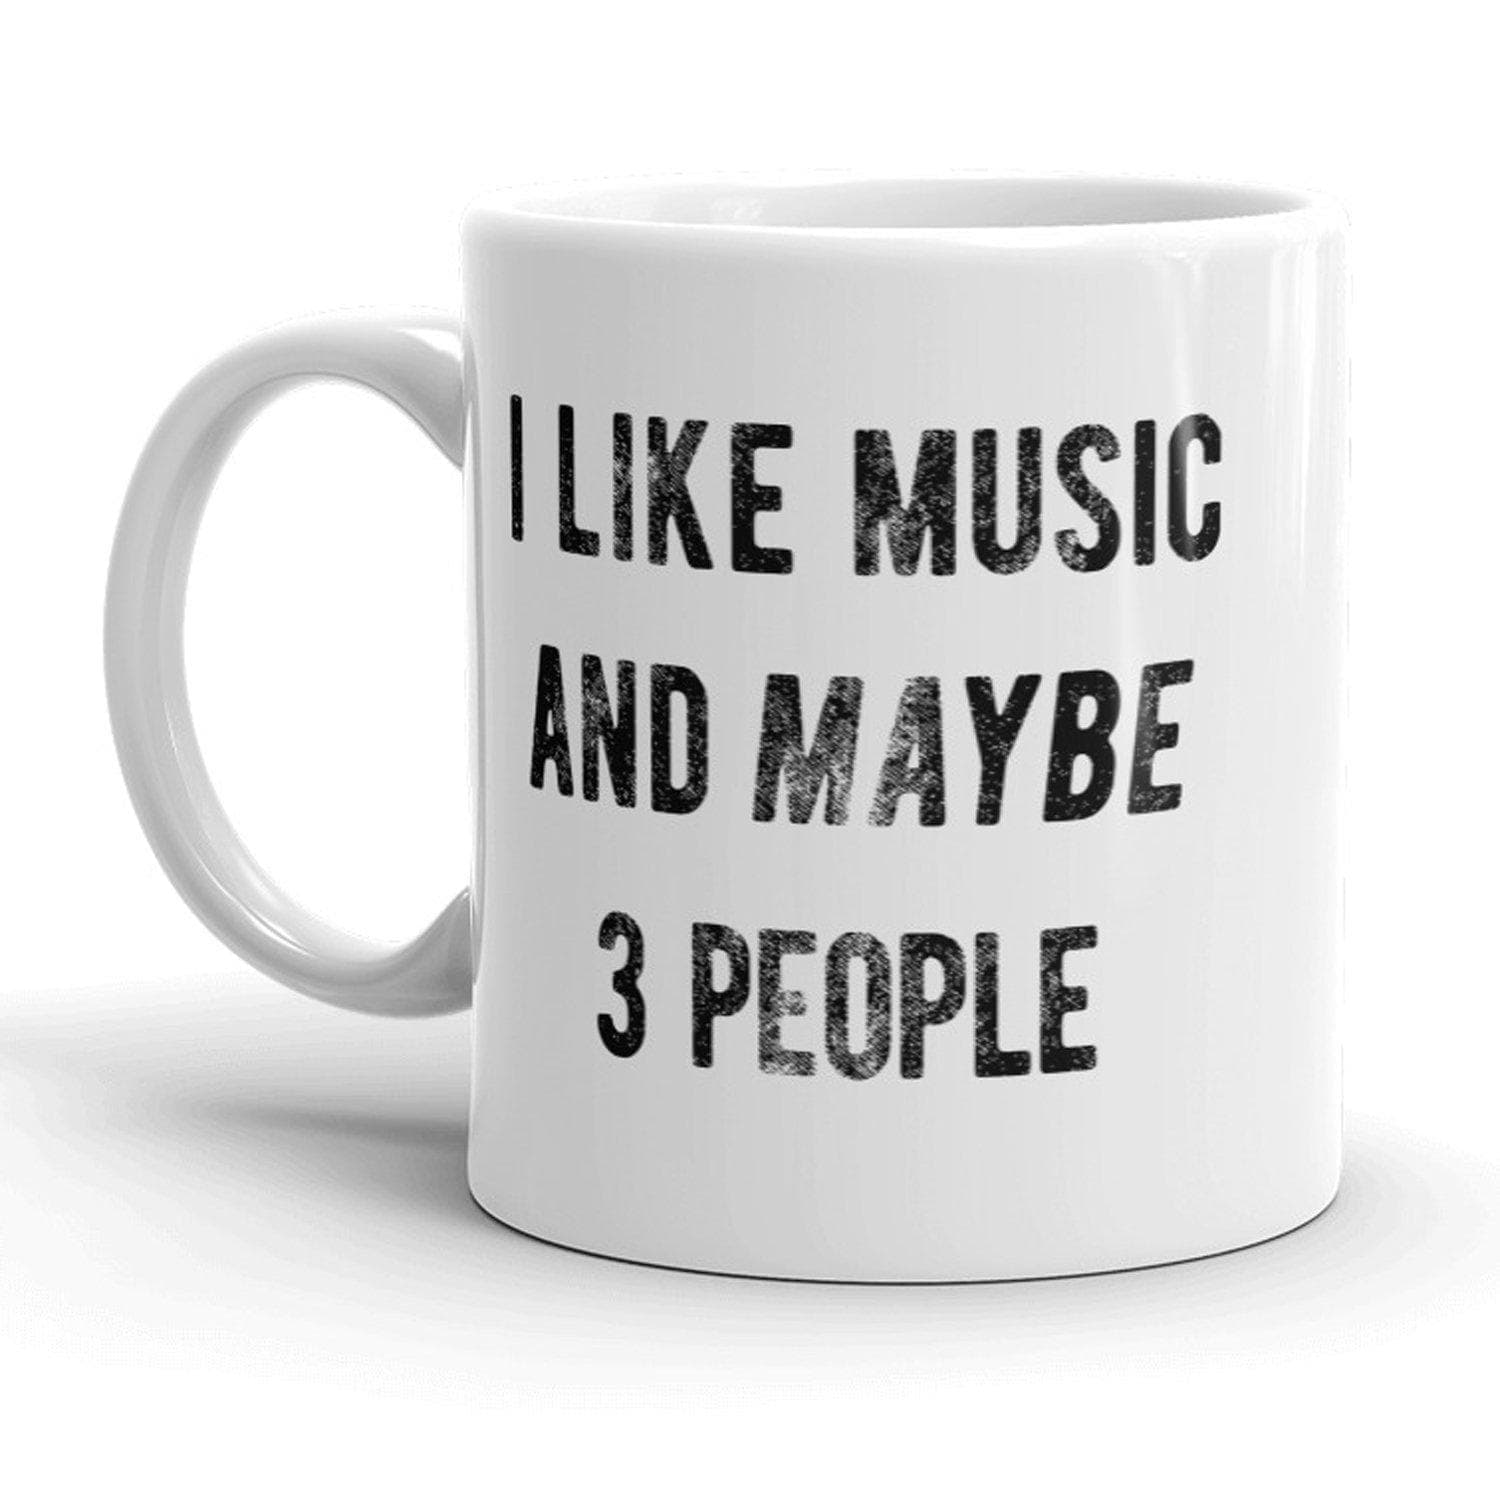 I Like Music And Maybe 3 People Mug - Crazy Dog T-Shirts